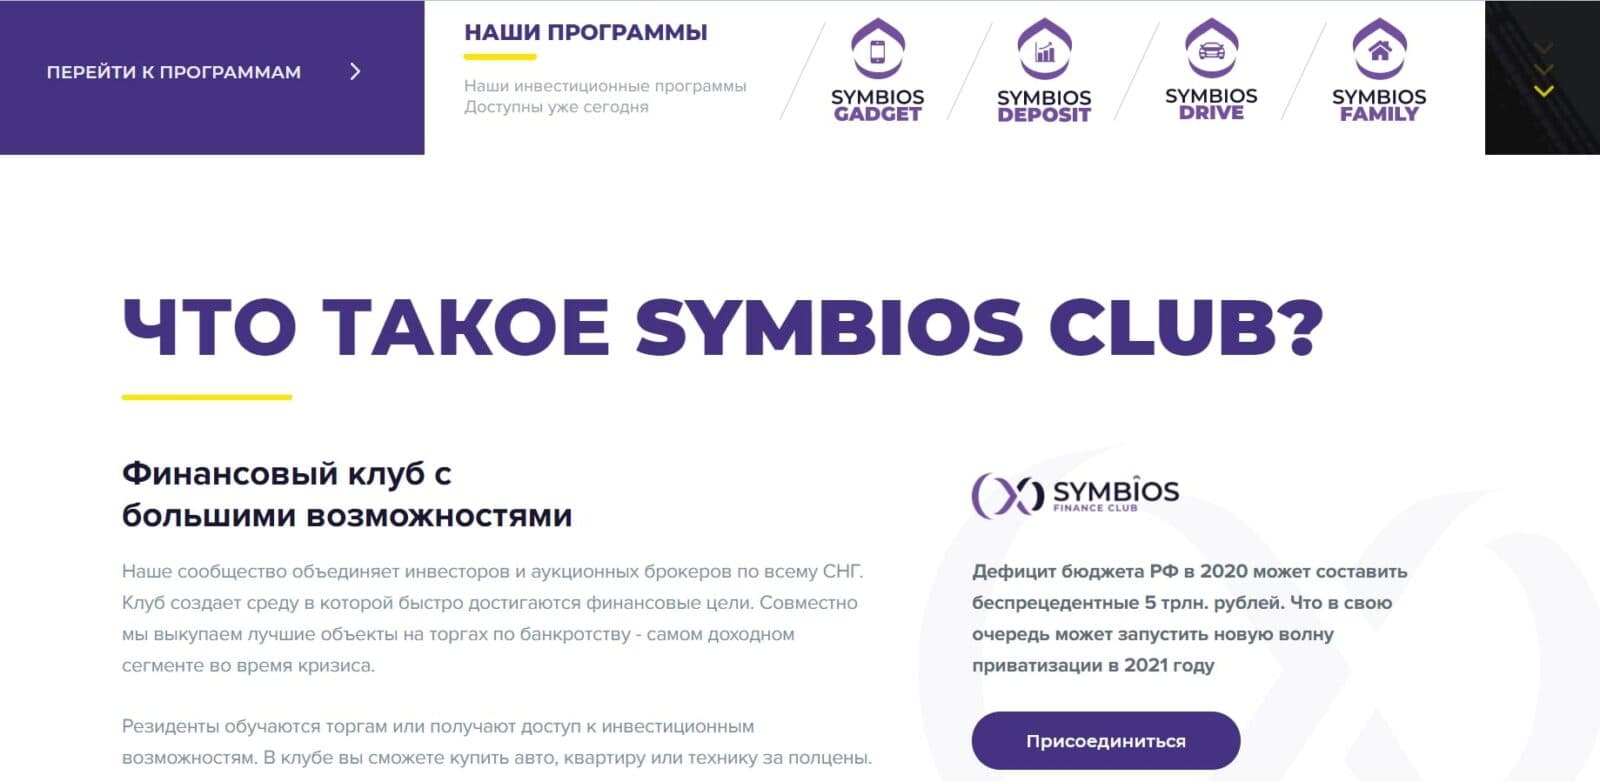 Финансовый клуб Symbios Club